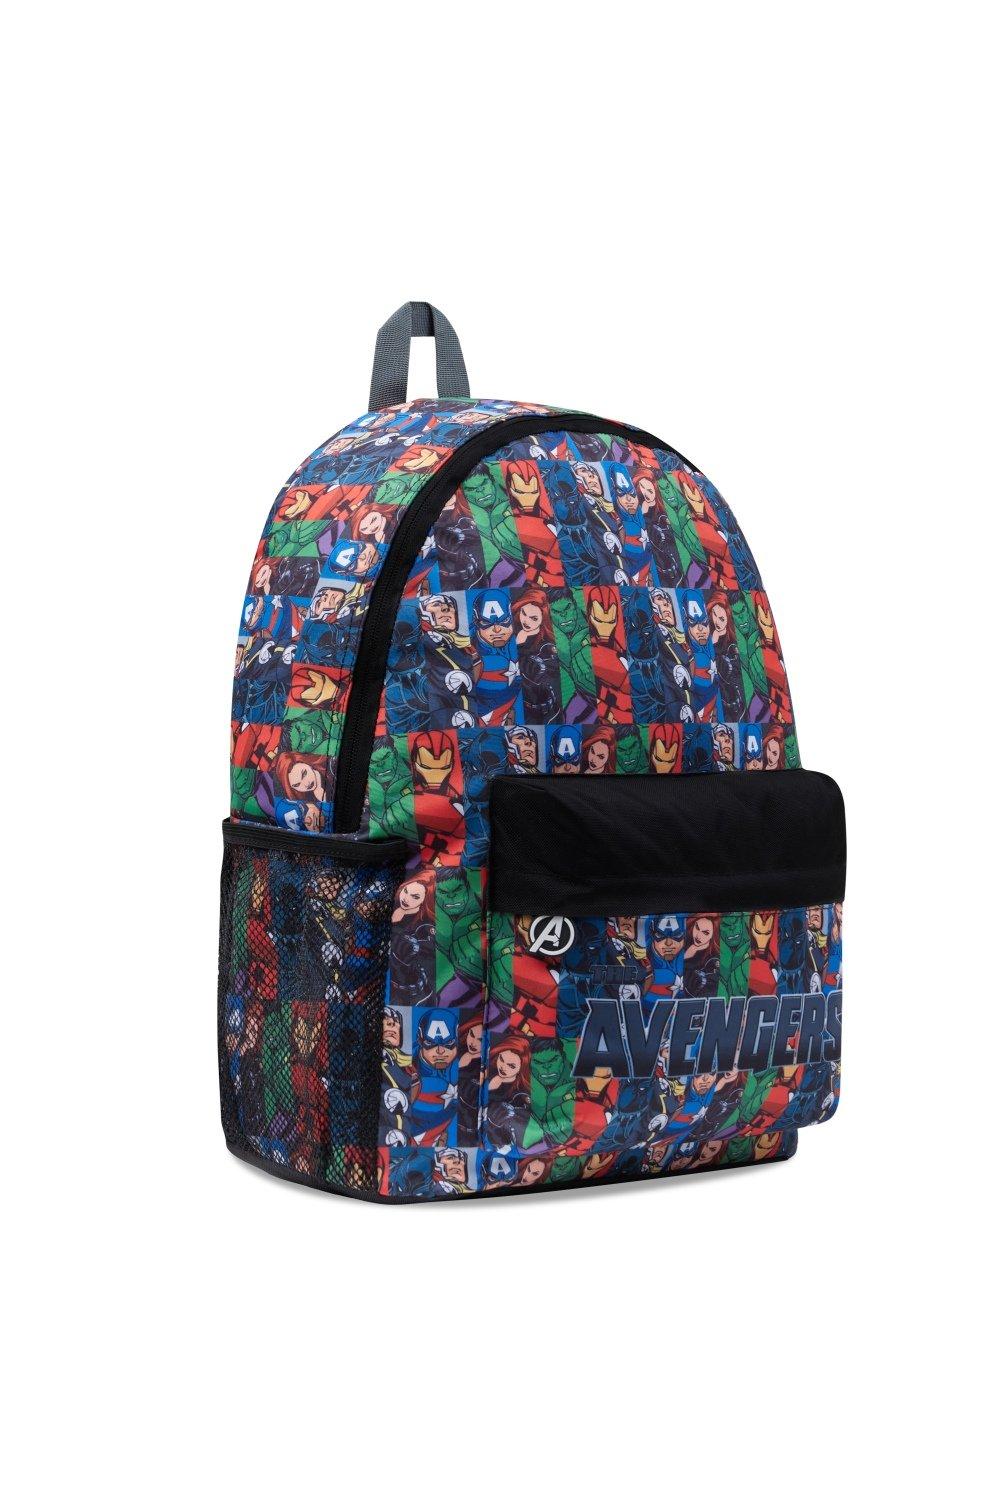 Рюкзак Мстителей большой вместимости Marvel, мультиколор детский школьный ранец с принтом динозавра школьный рюкзак для мальчиков подростков сумка для книг для мальчиков